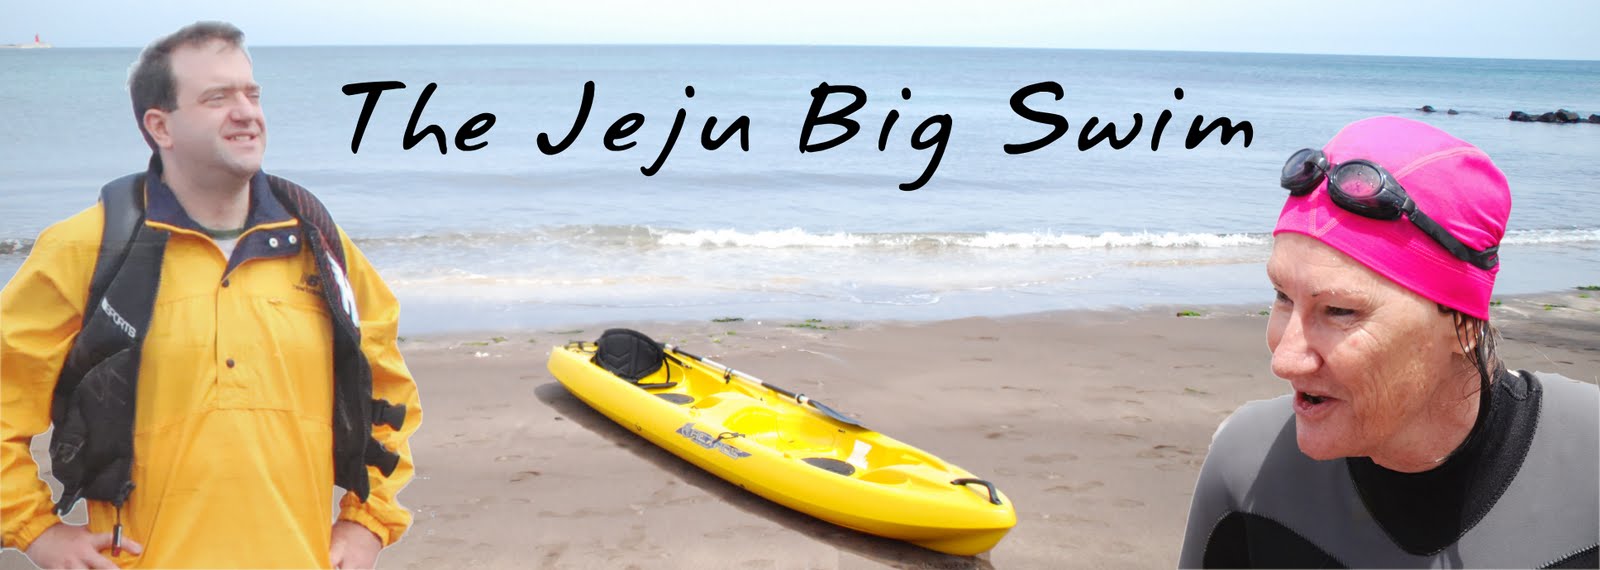 The Jeju Big Swim